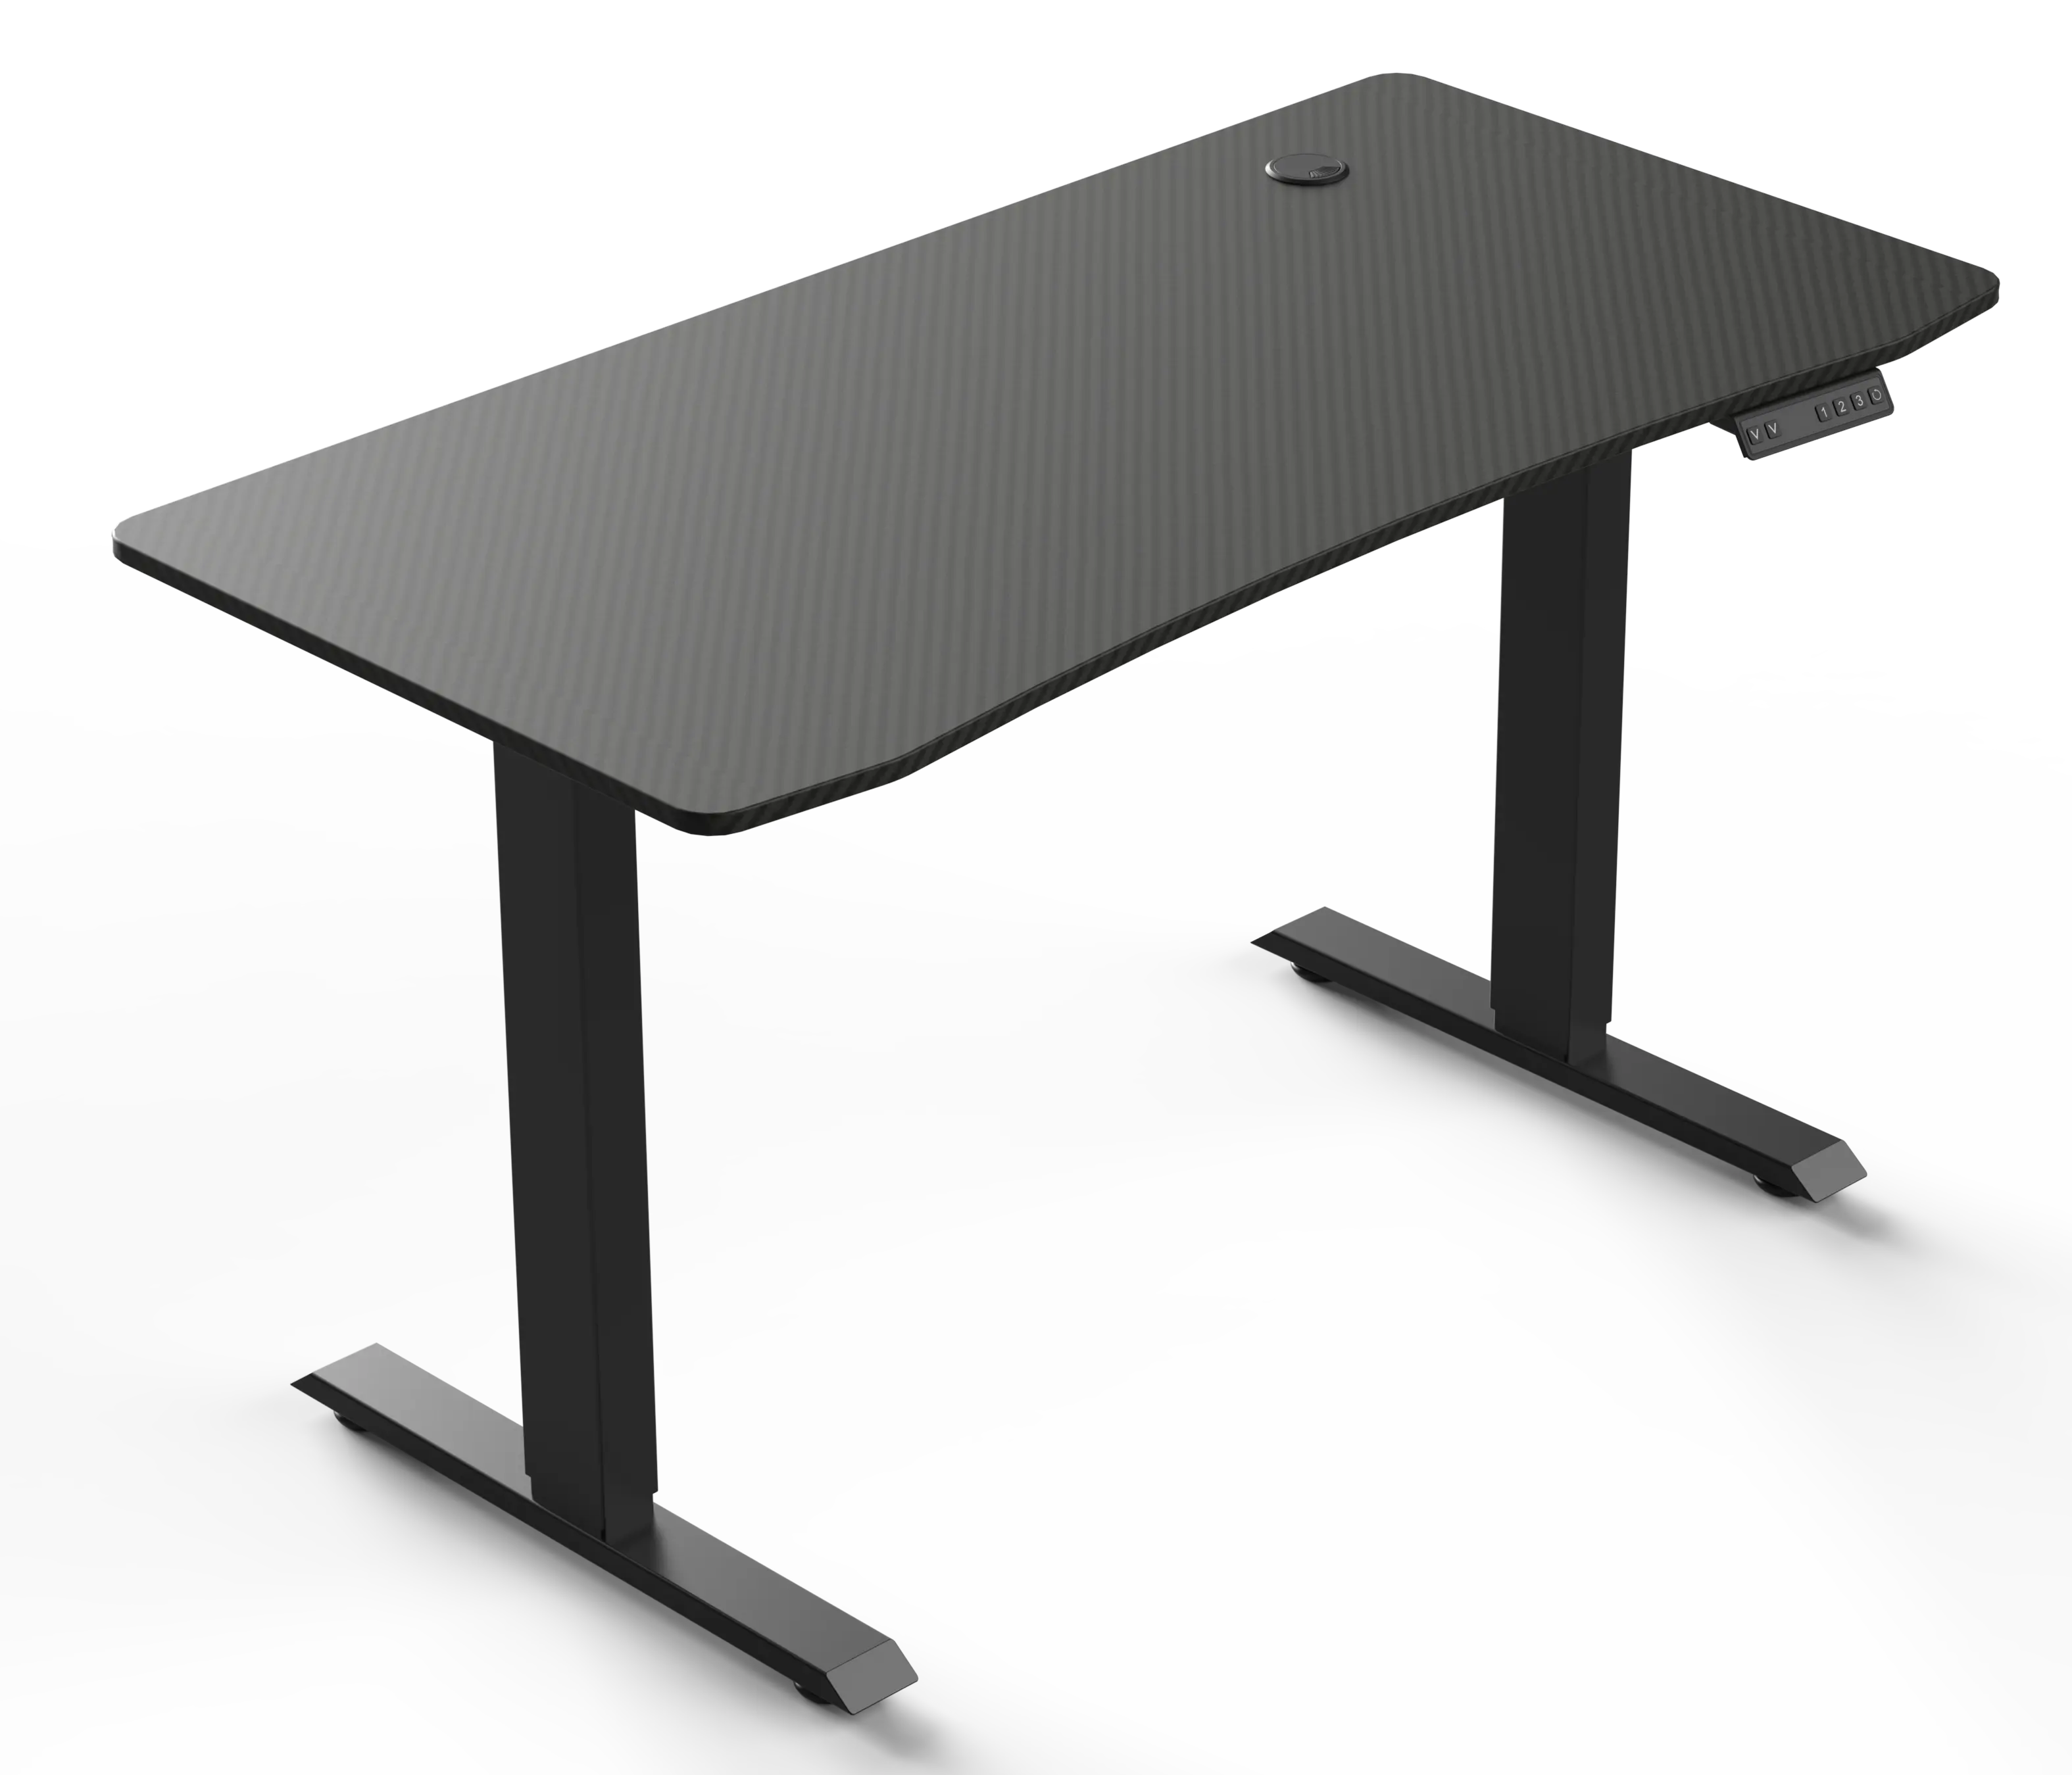 Meja kayu kualitas tinggi, dekorasi furnitur kantor ruang tamu meja game dapat disesuaikan untuk meja